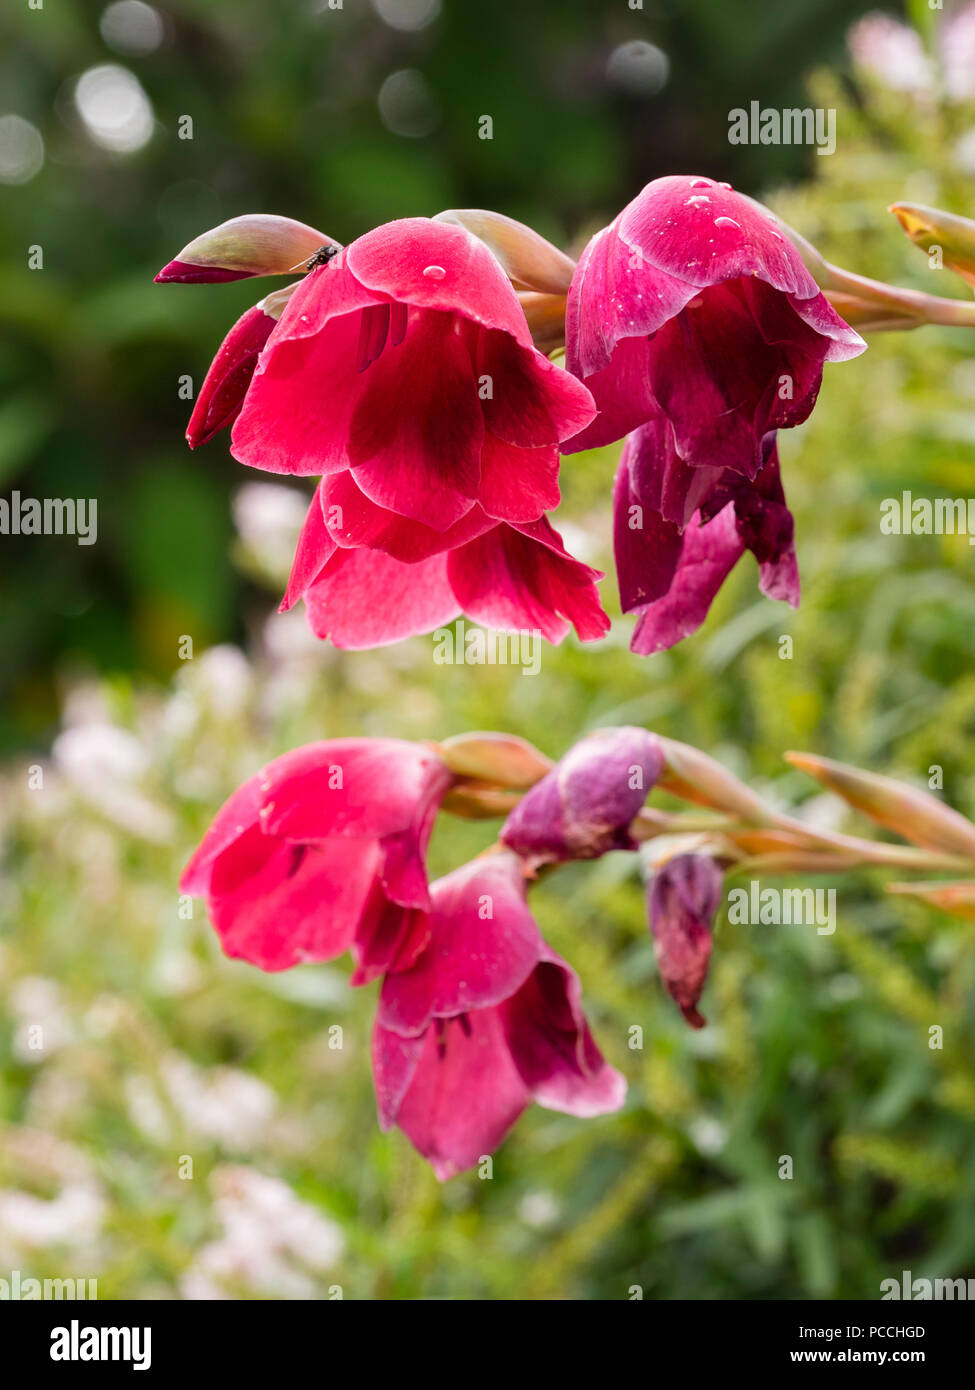 Bogenschiessen Blumenstengel und rote Glocke Blumen der Südafrikanischen Knolle, Gladiolus Papilio 'Ruby' Stockfoto